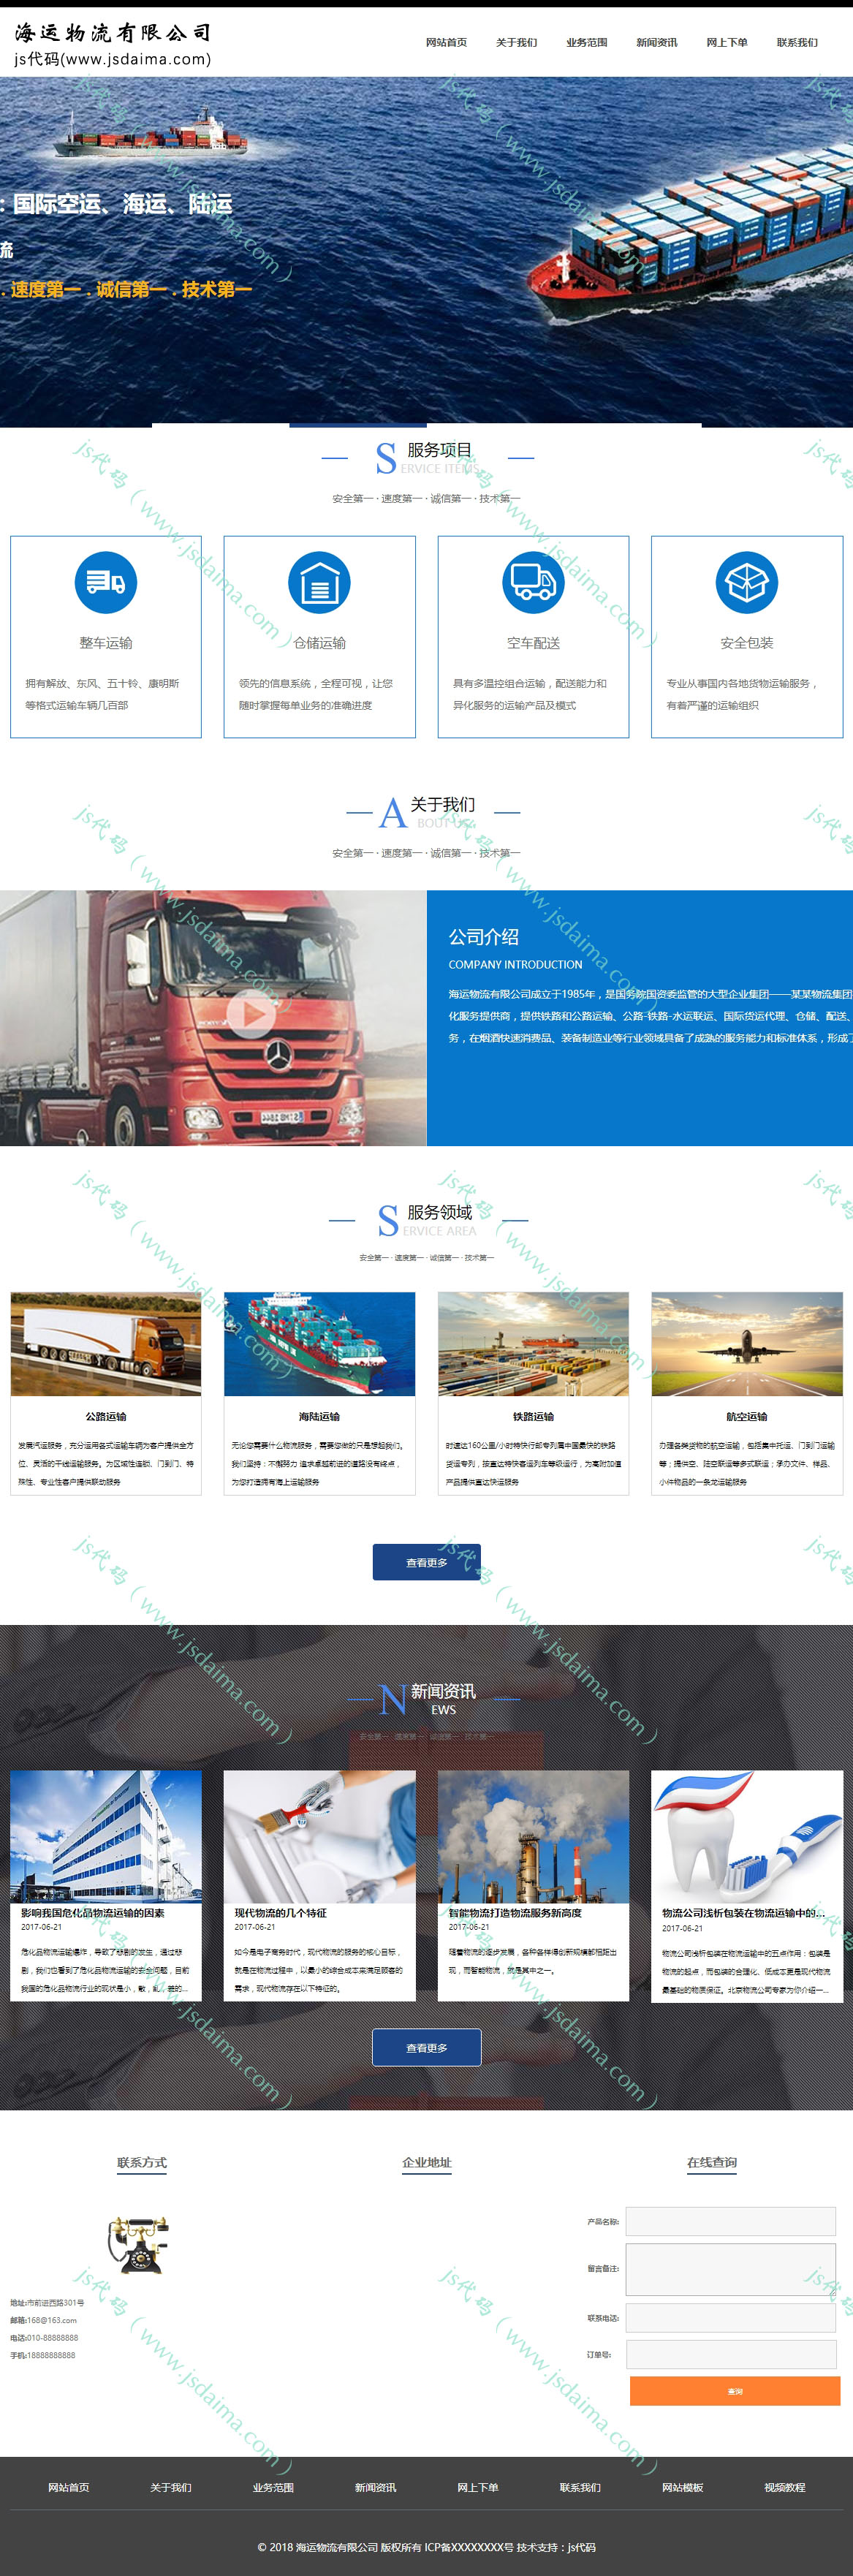 蓝色宽屏大气海洋物流运输集团公司企业官网网站模板